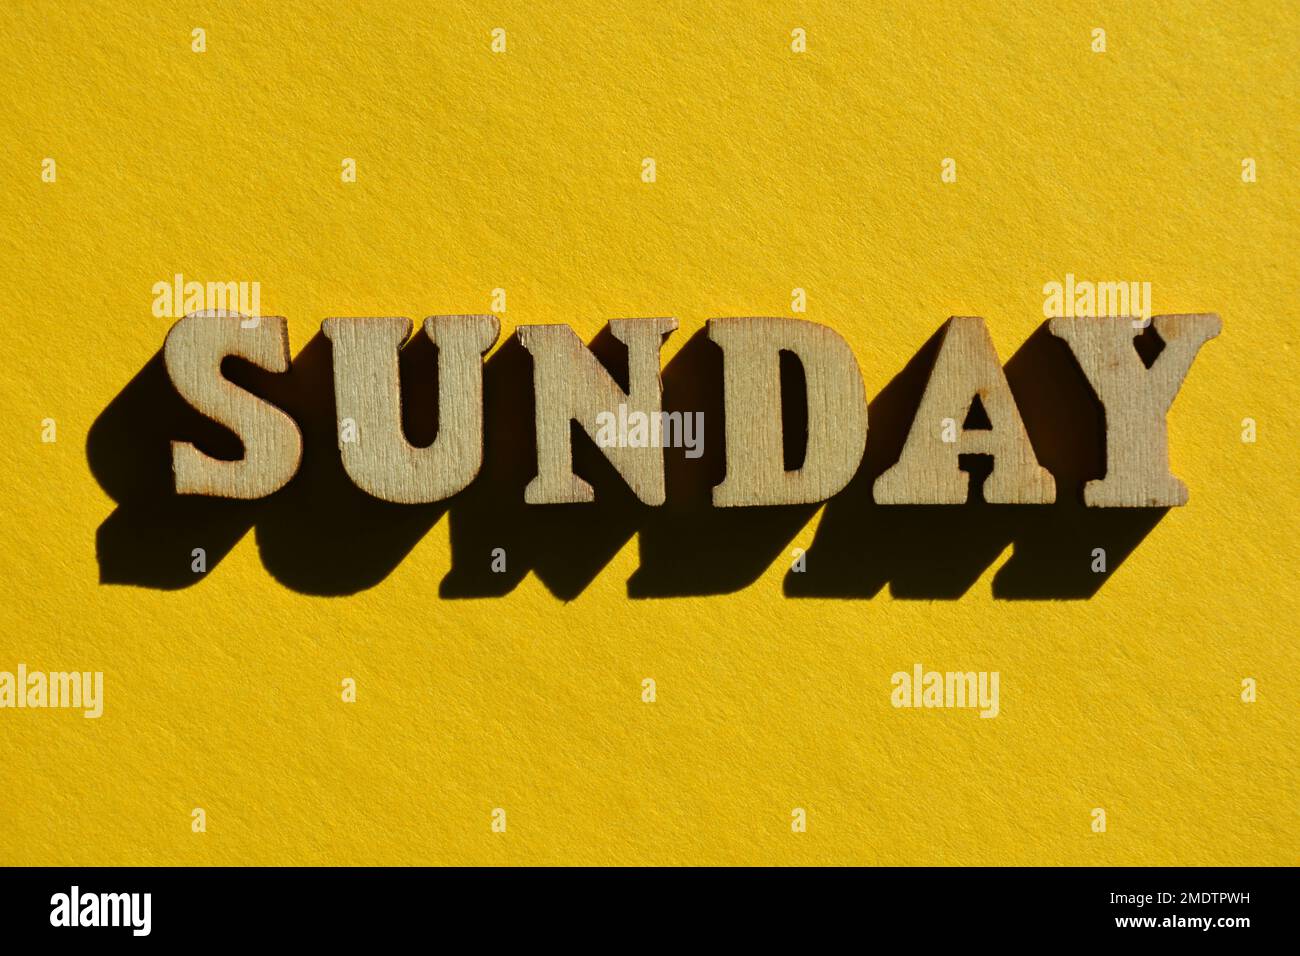 Domenica, parola in 3D lettere di alfabeto ligneo isolate su sfondo giallo Foto Stock